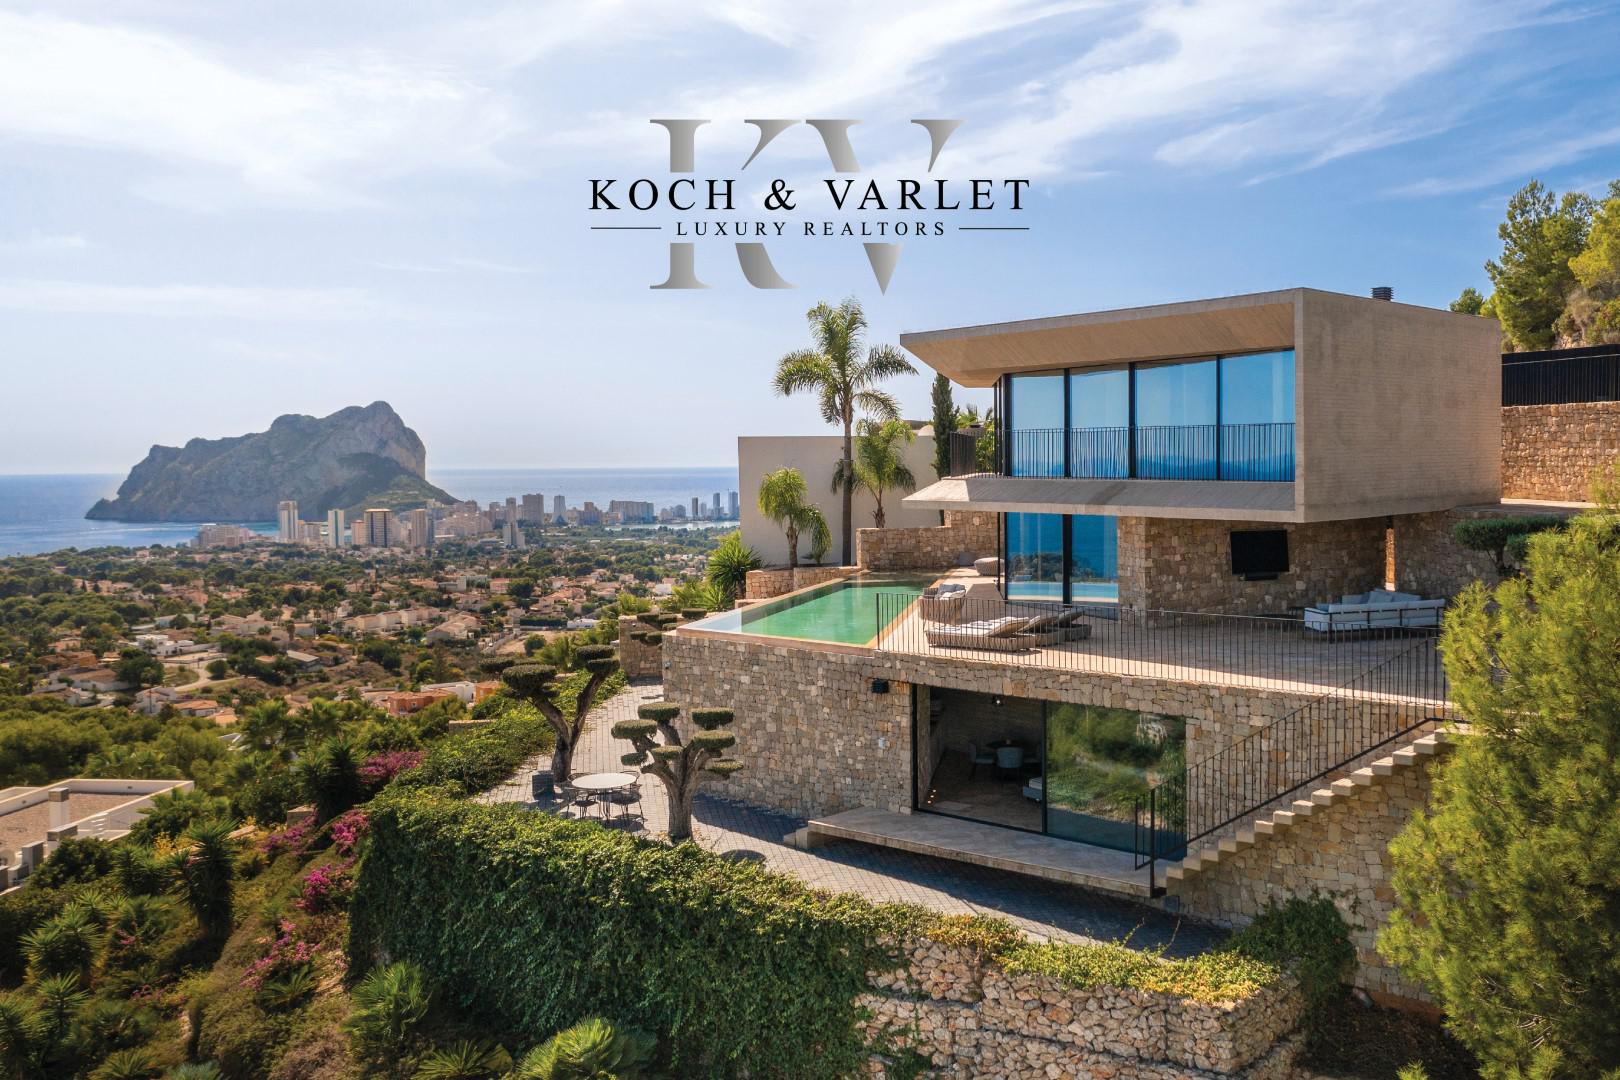 Images Koch & Varlet Luxury Realtors, S.L.